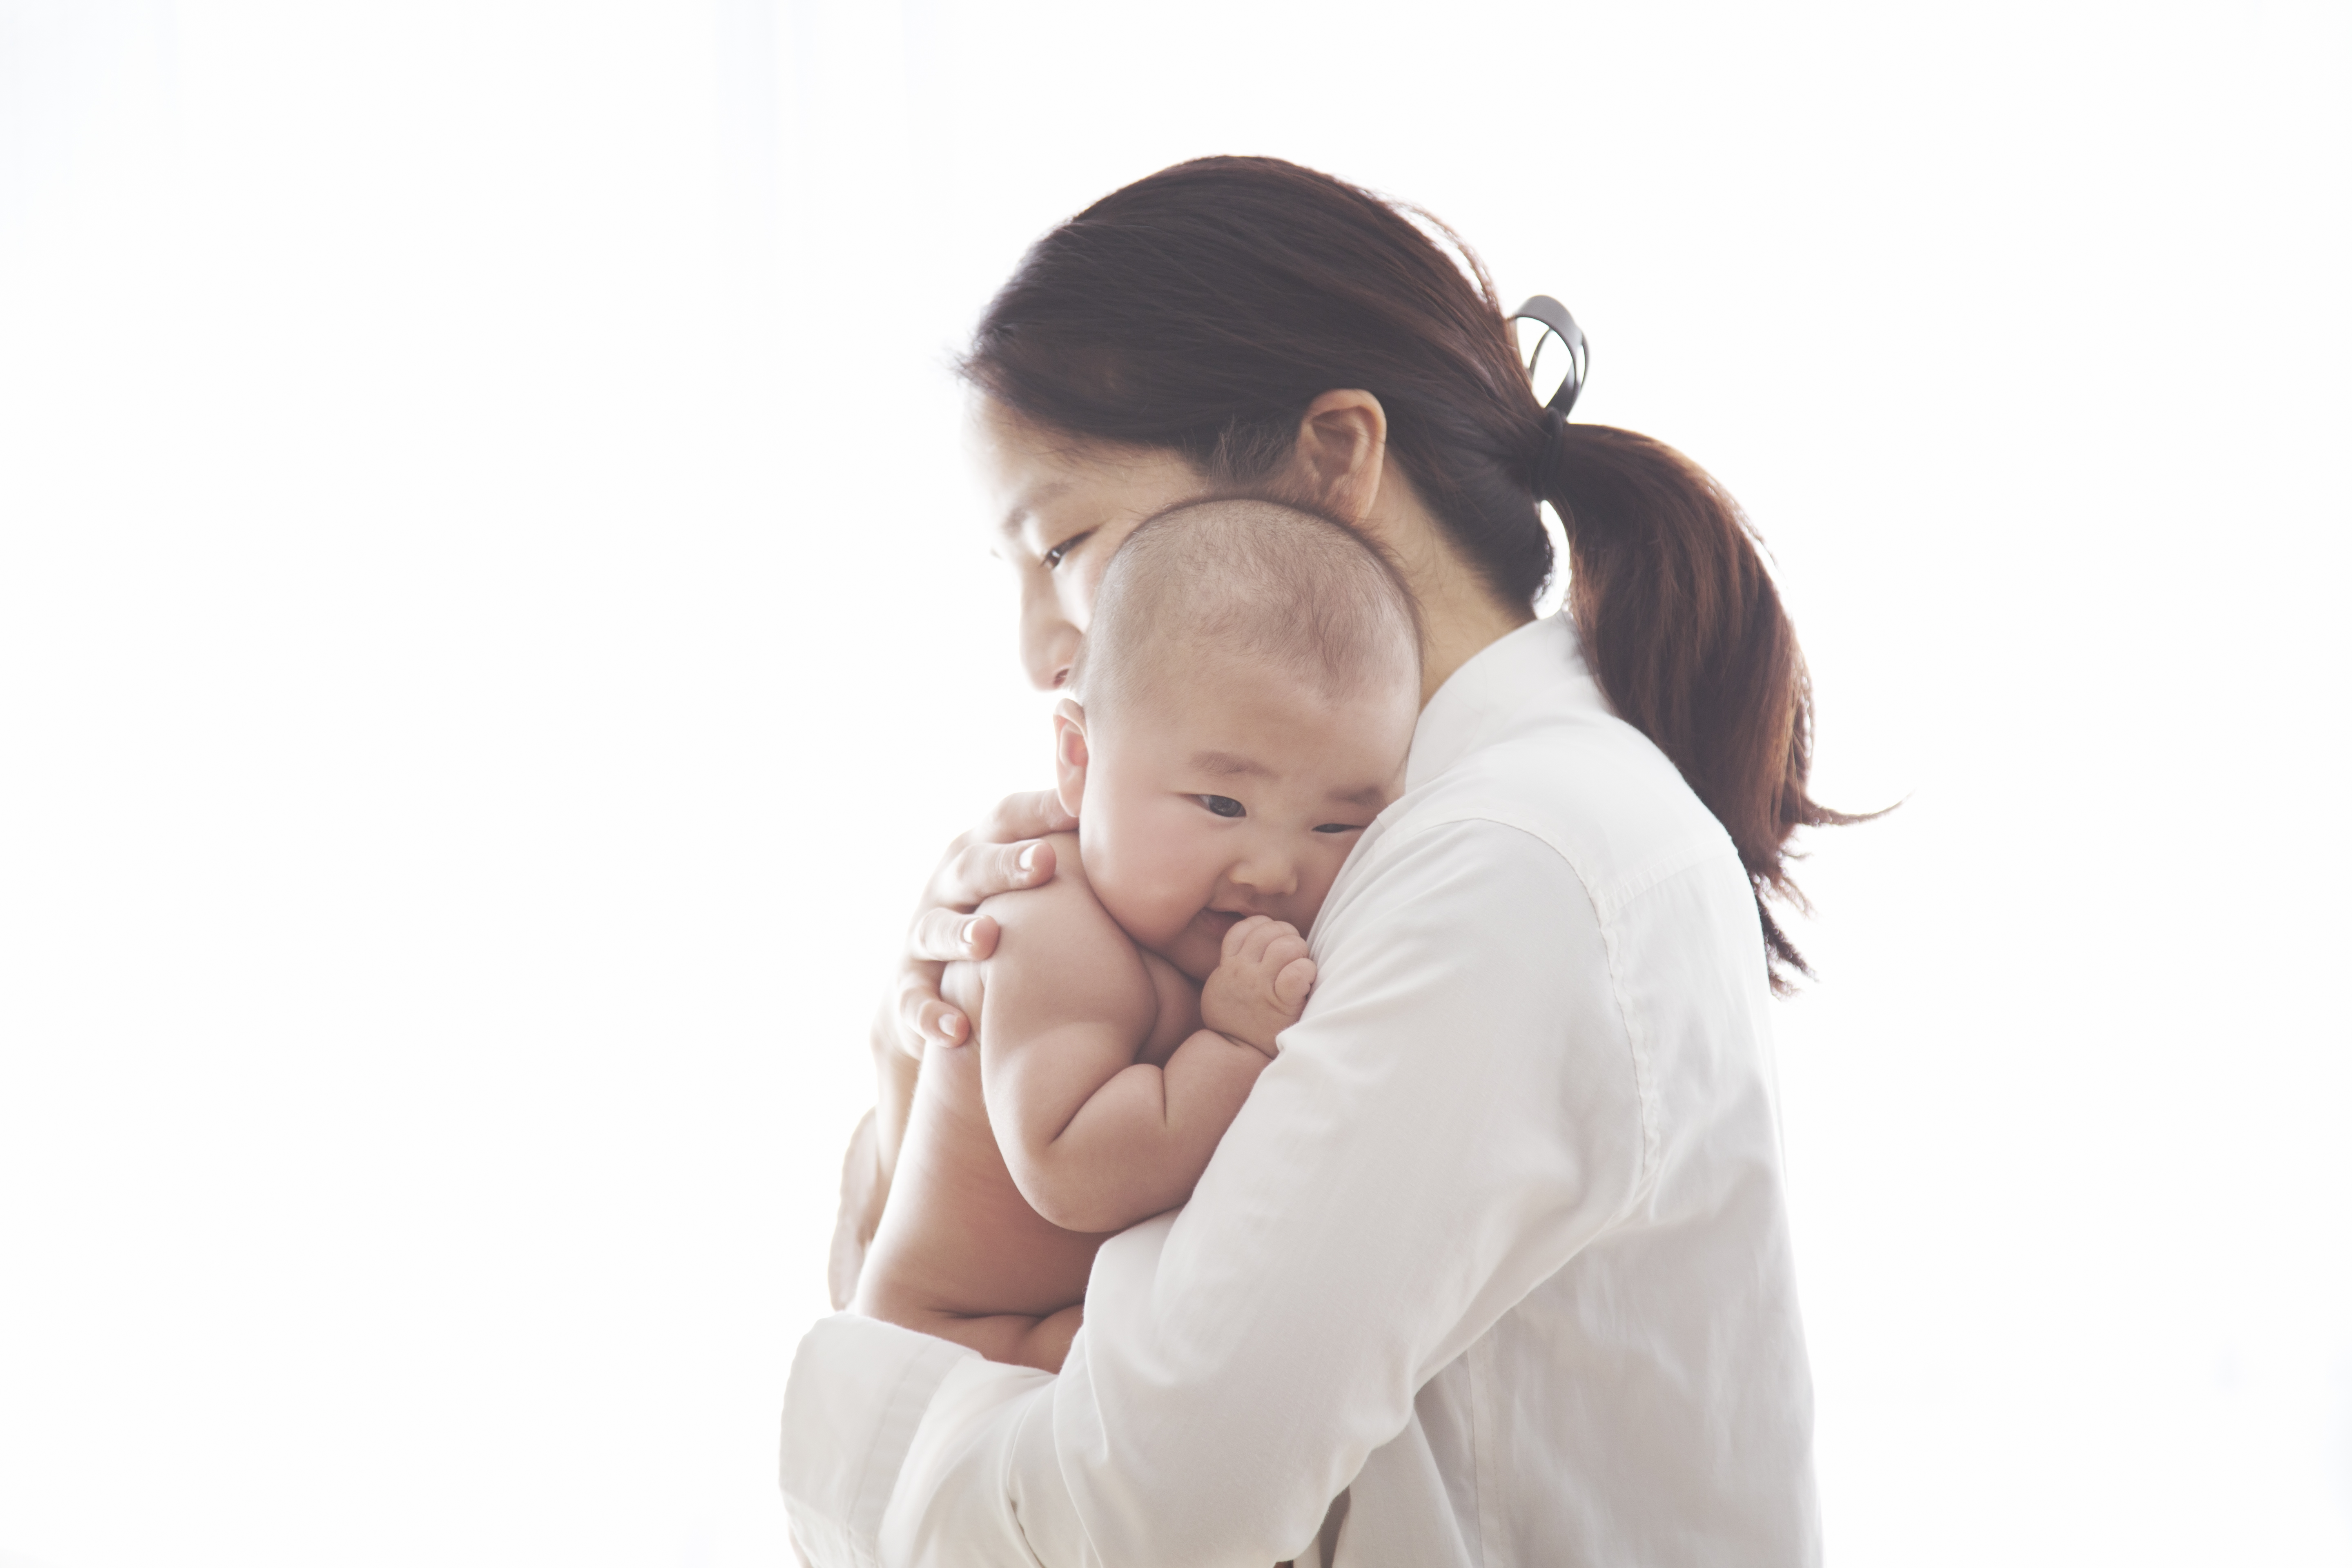 Symptoms of Postpartum depression